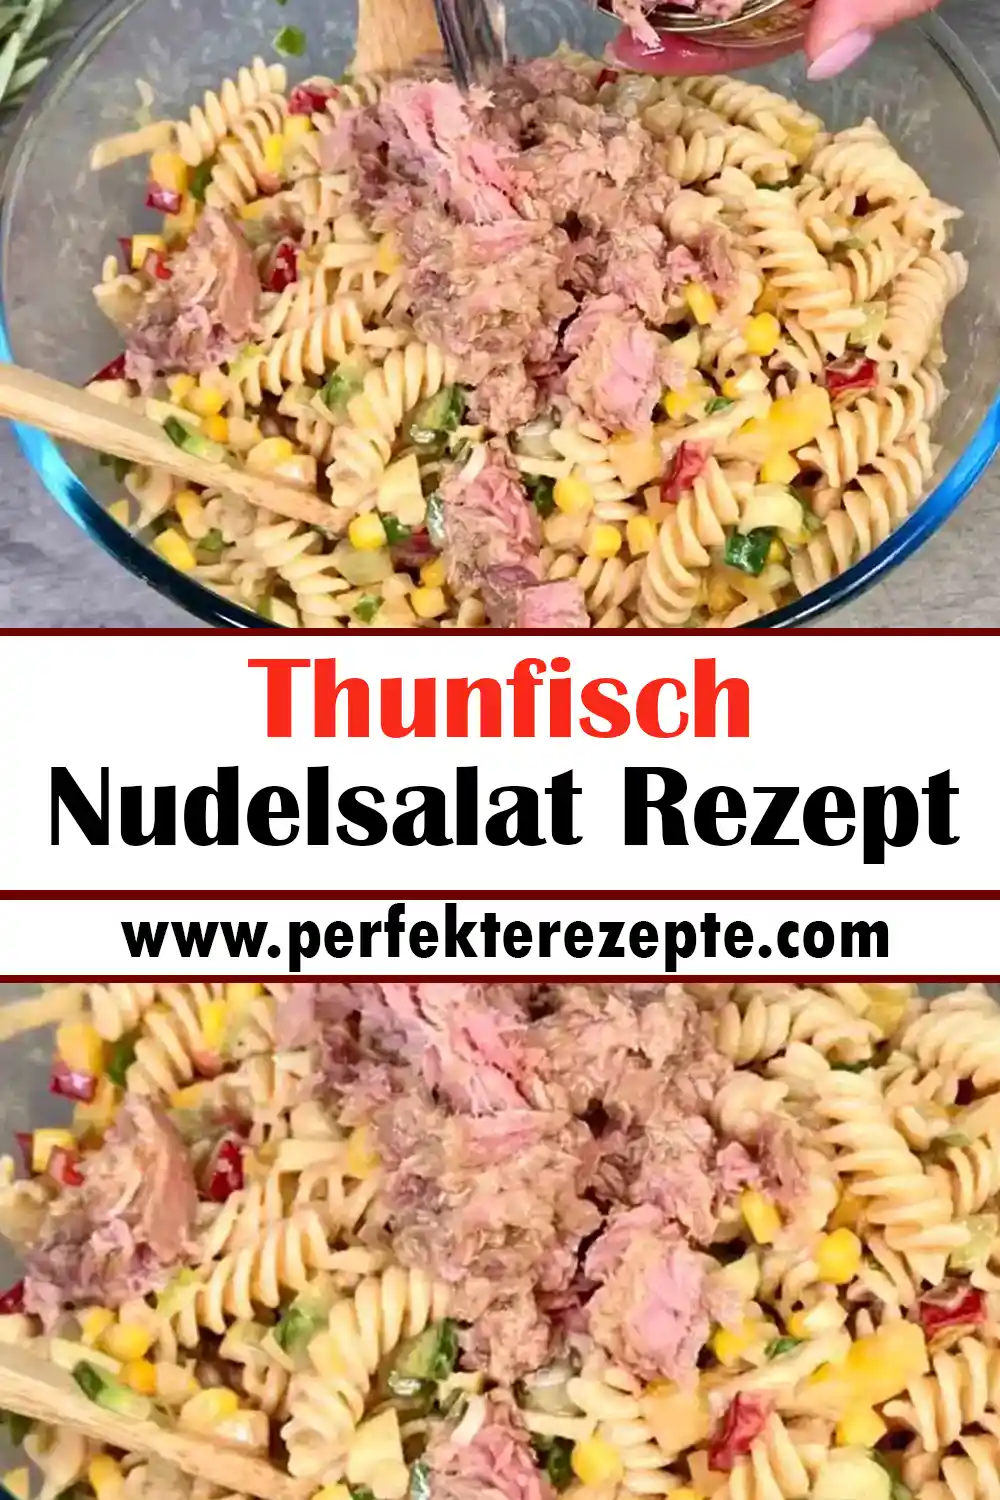 Thunfisch Nudelsalat Rezept